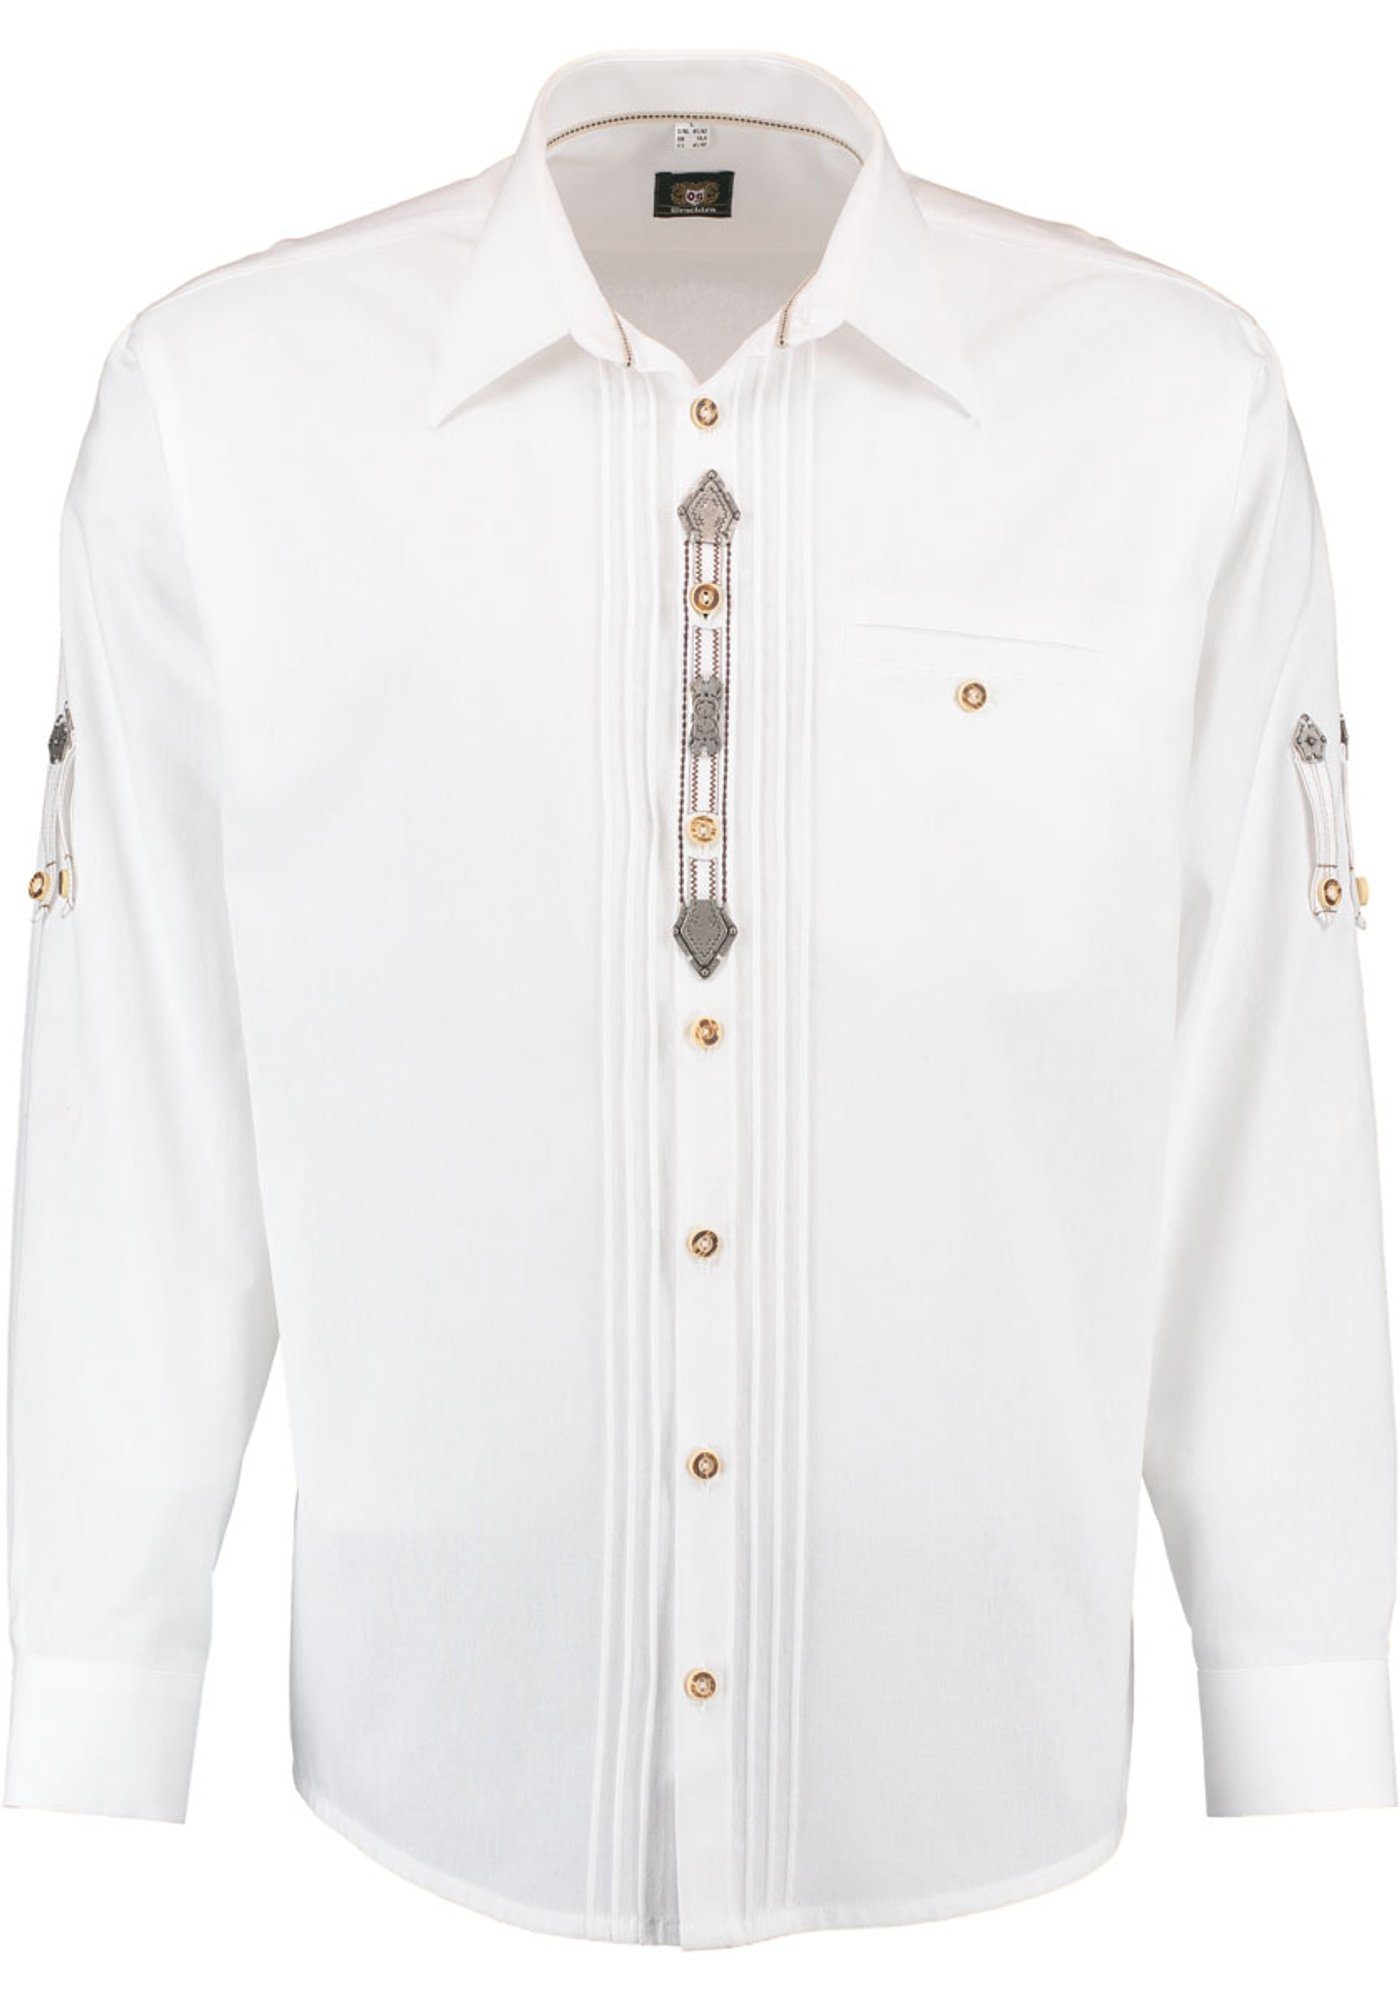 OS-Trachten Trachtenhemd Zierteile der auf 2x3 Knopfleiste weiß mit Afudi Biesen, Langarmhemd